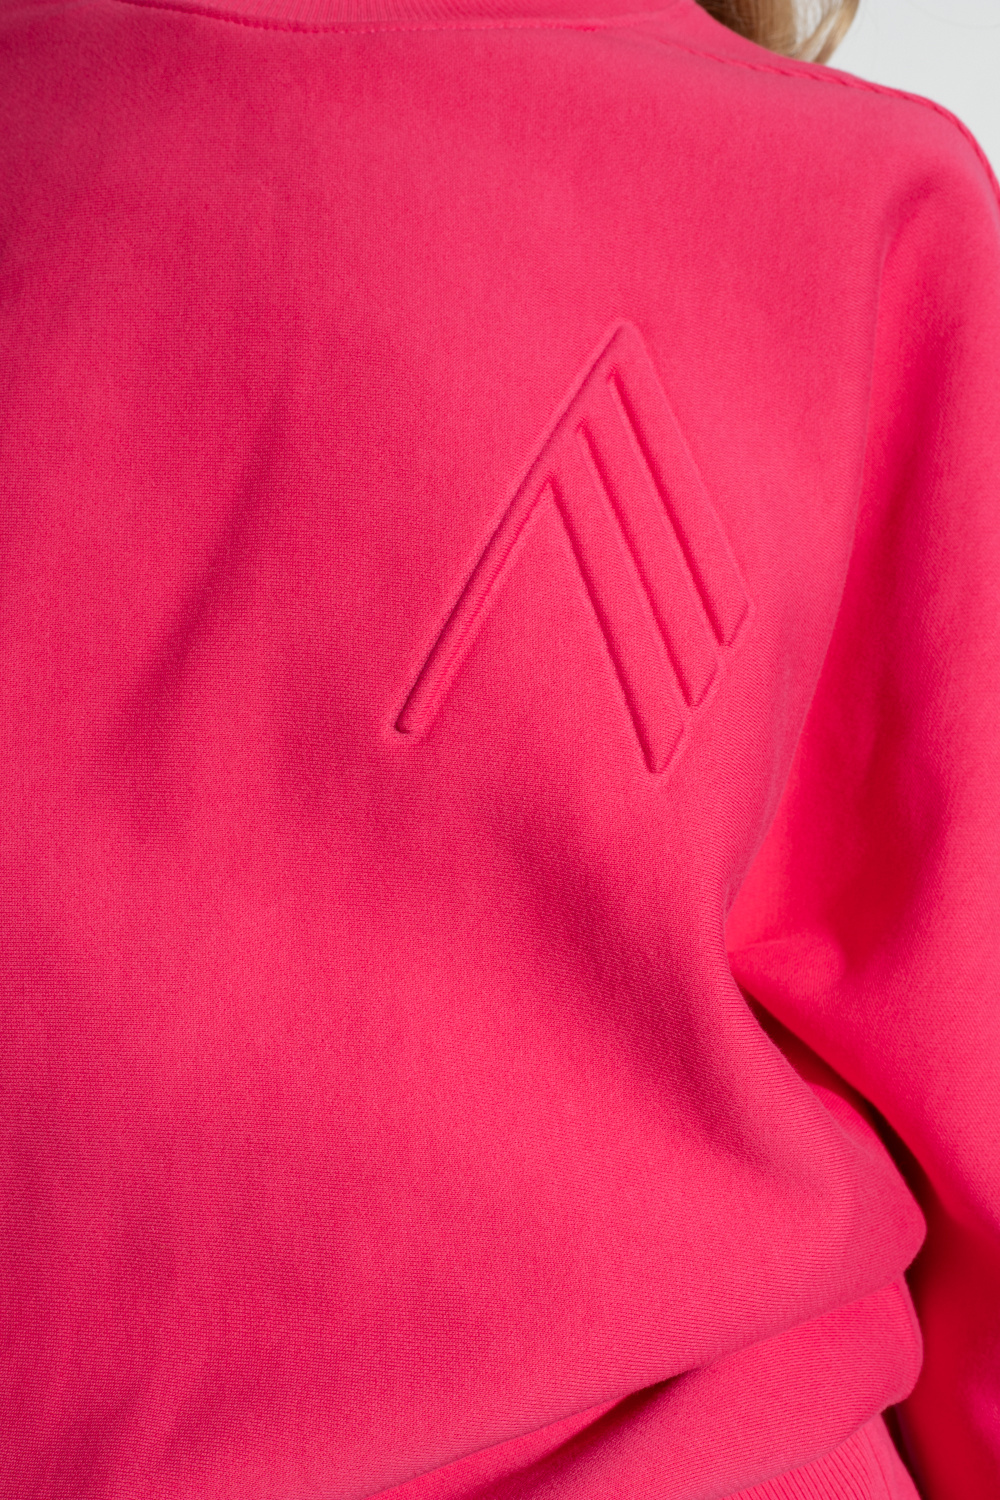 The Attico ‘Felpa’ sweatshirt